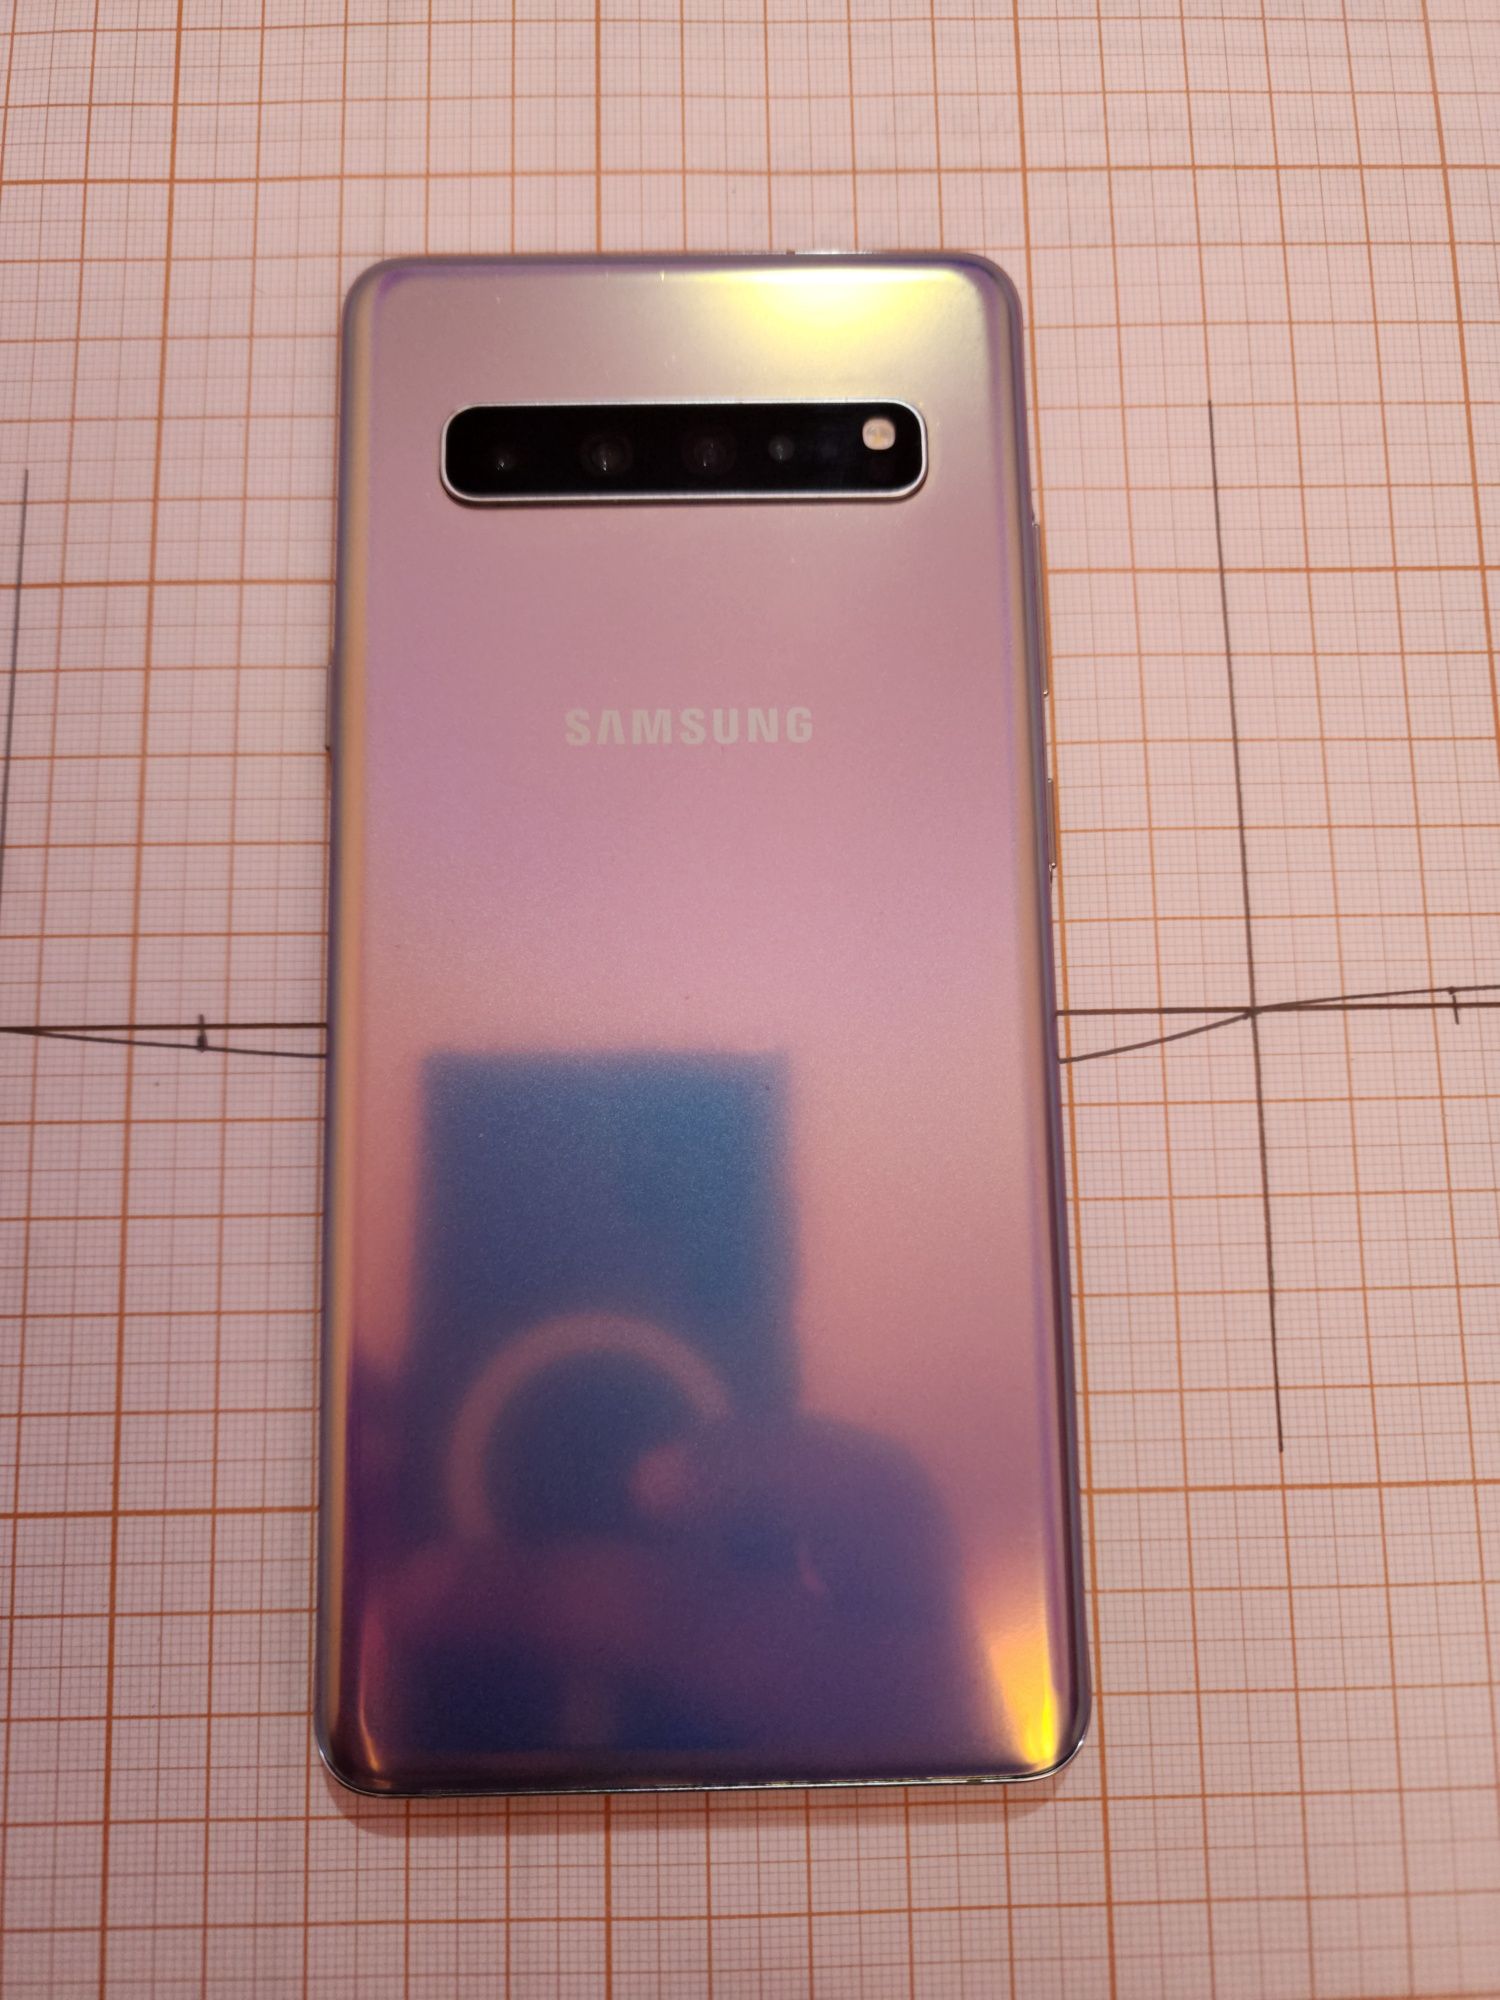 Samsung galaxy s10 5g